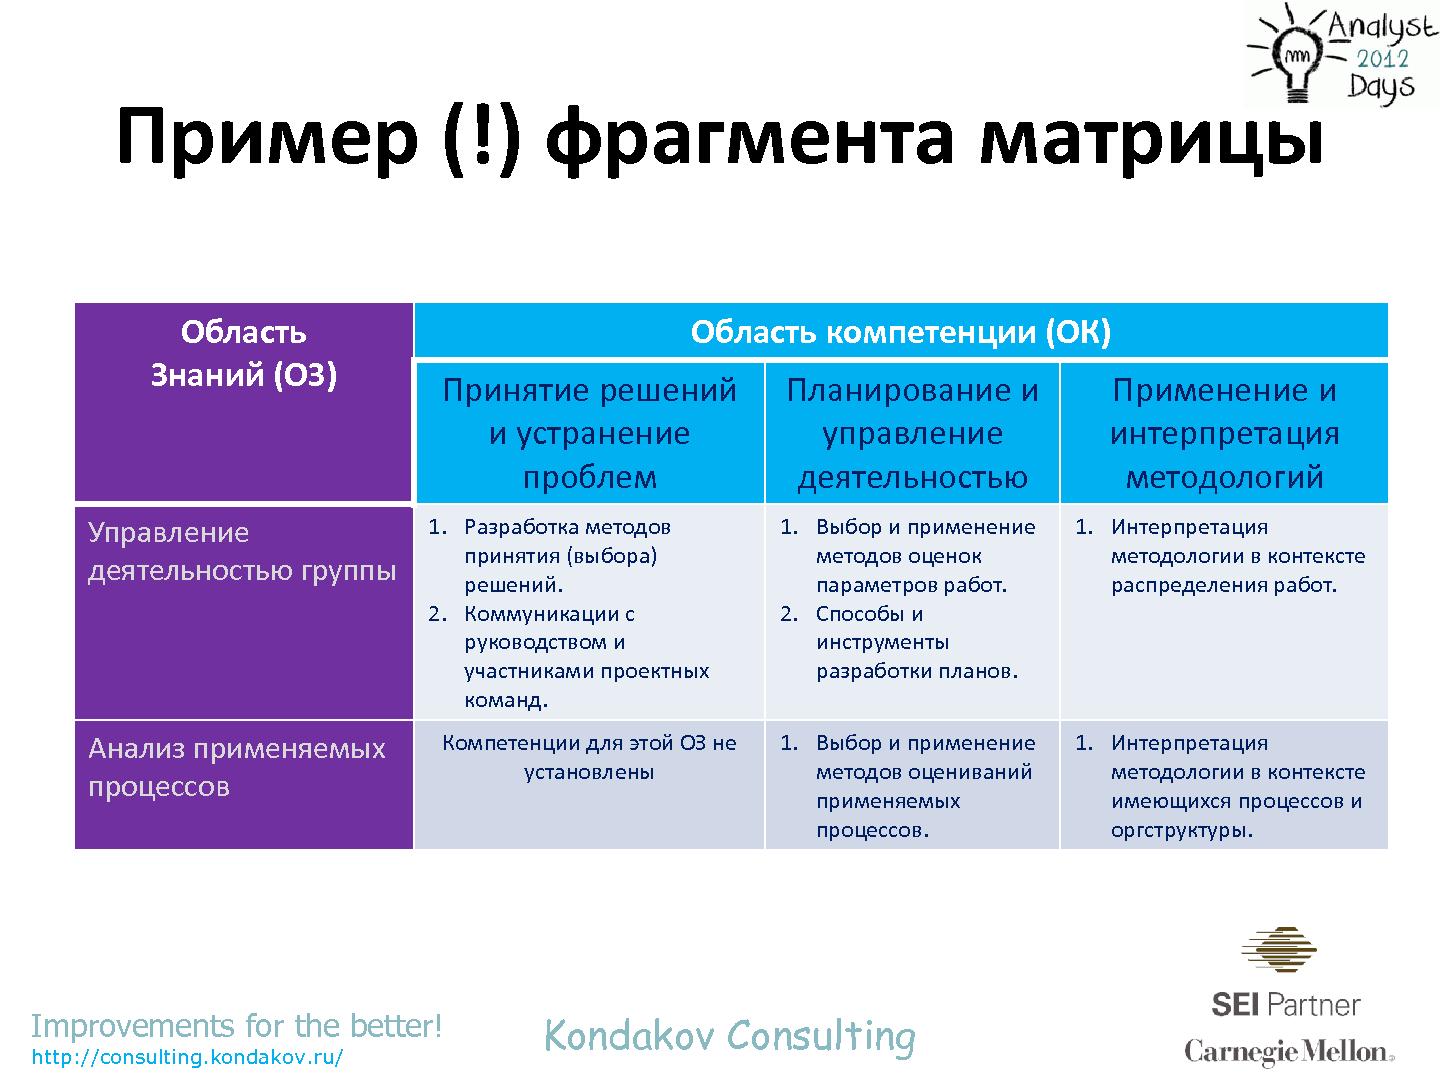 Файл:Оценивания по CMMI как… источник вдохновения (Александр Кондаков, AnalystDays-2012).pdf